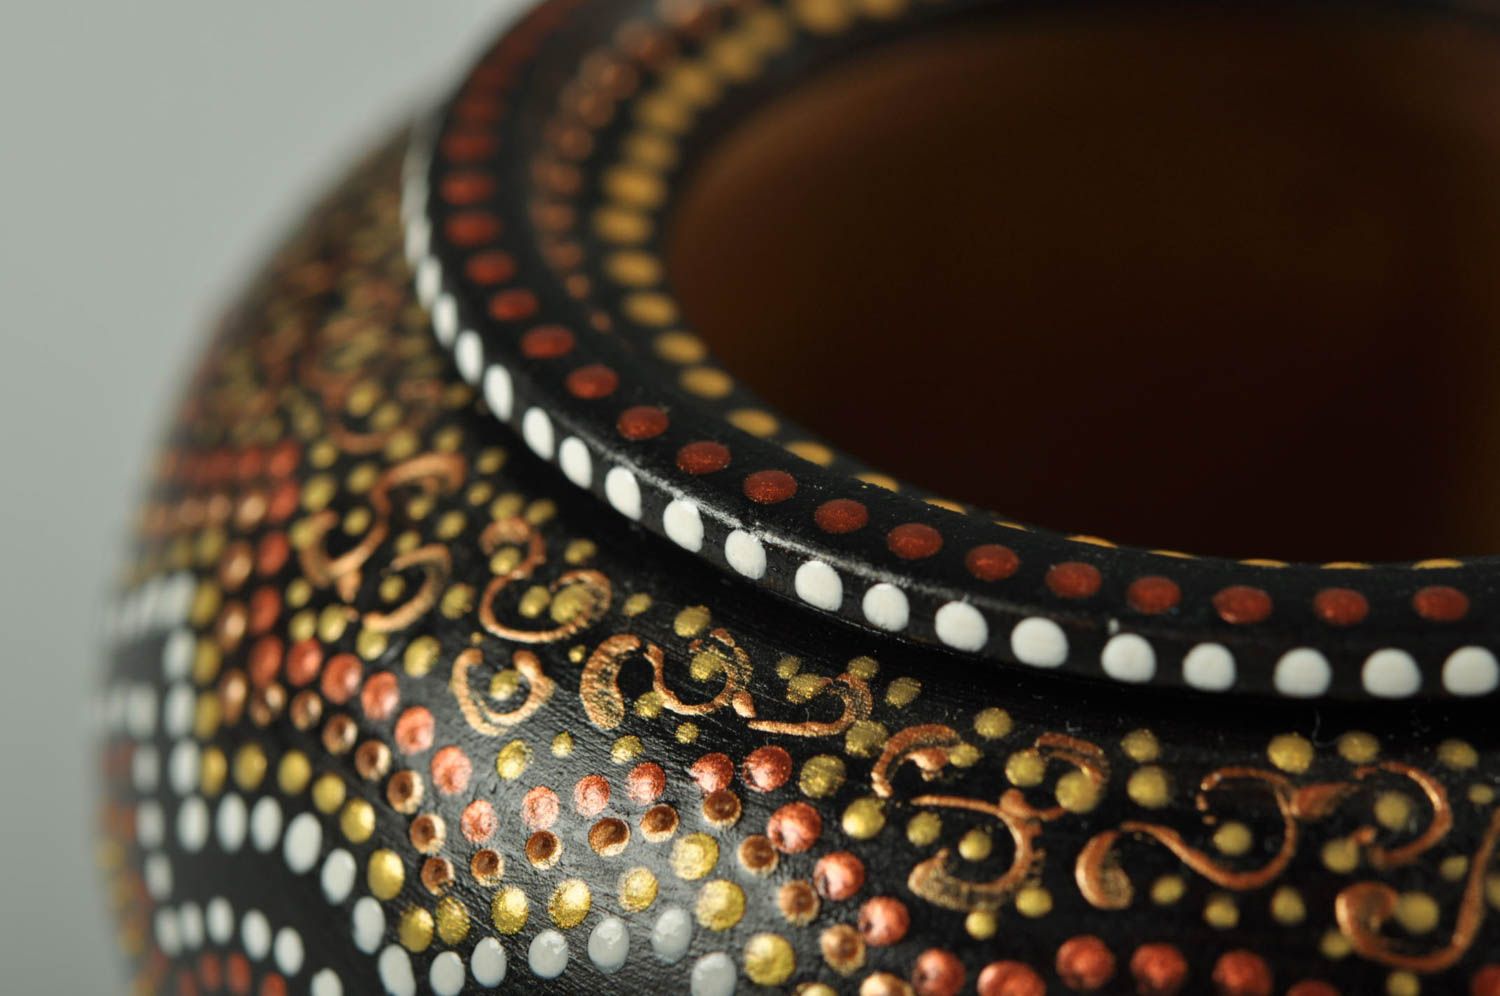 Pote de barro paa cocina cerámica artesanal original elemento decorativo foto 2